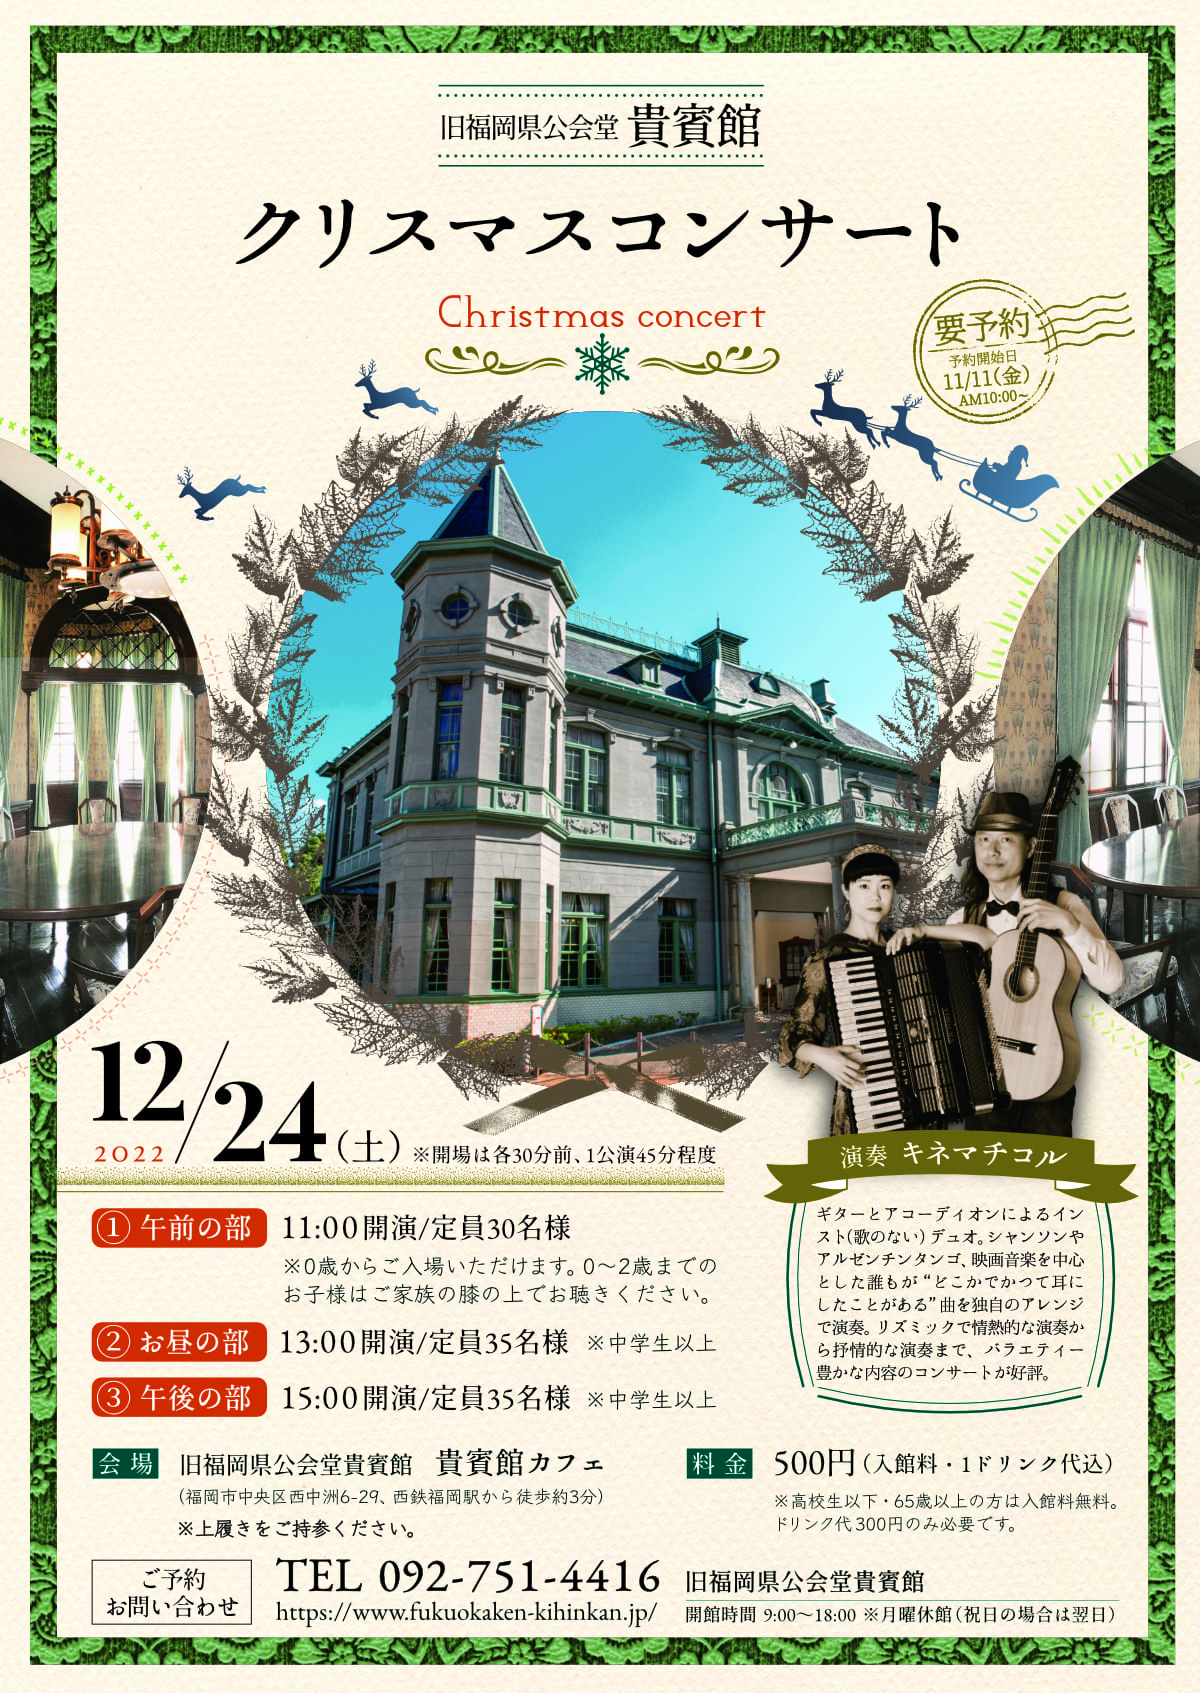 旧福岡県公会堂貴賓館クリスマスコンサートチラシ